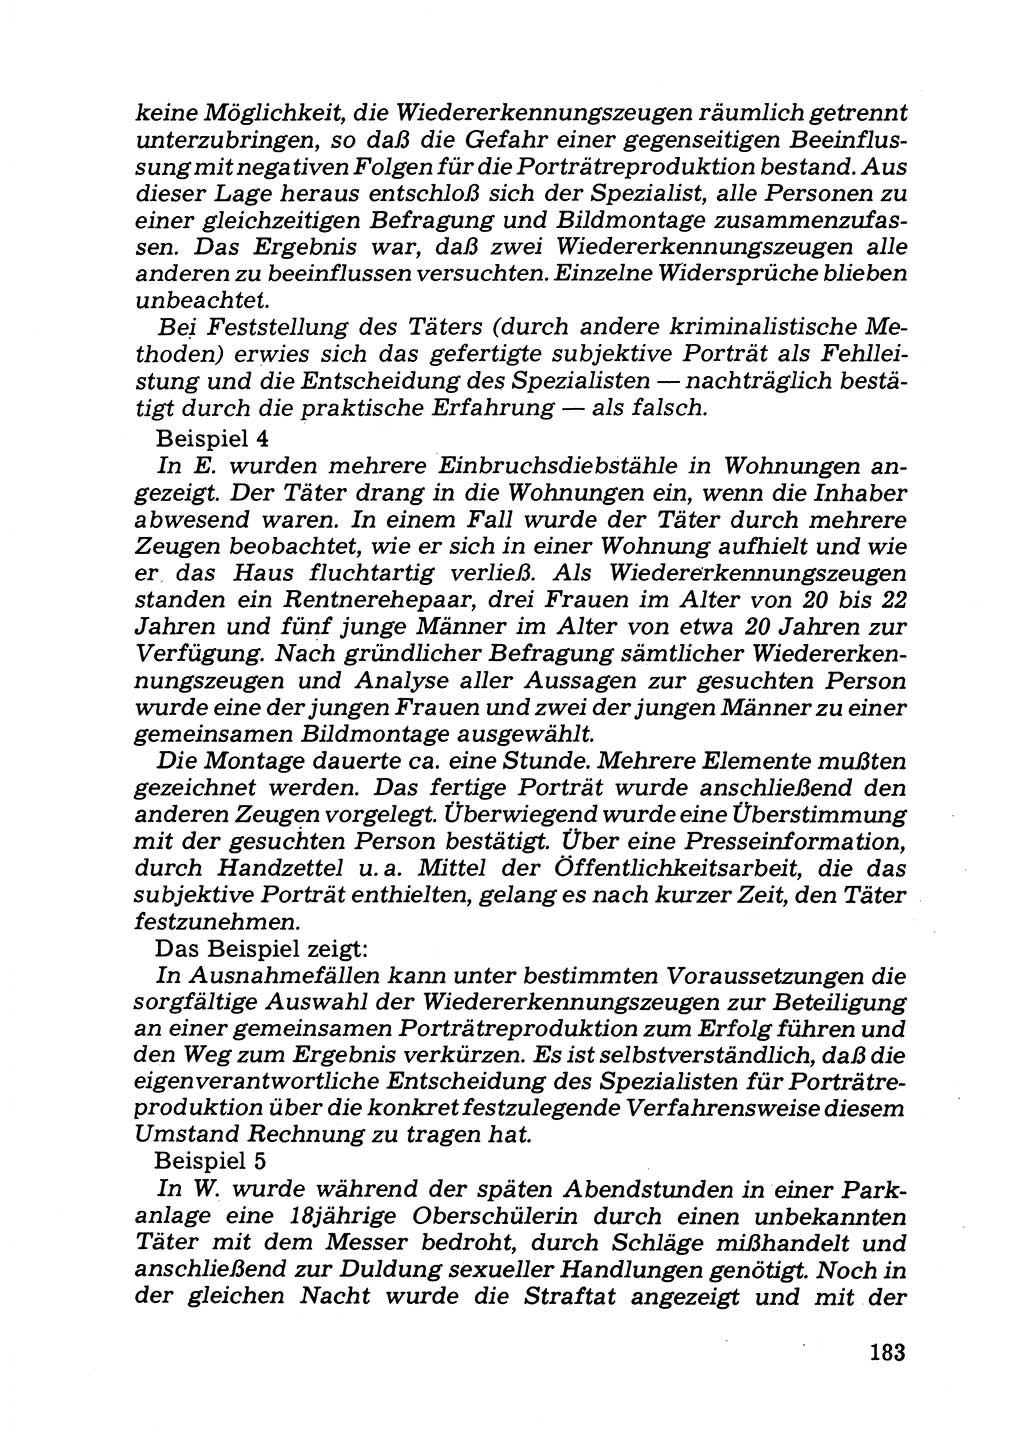 Das subjektive Porträt [Deutsche Demokratische Republik (DDR)] 1981, Seite 183 (Subj. Port. DDR 1981, S. 183)